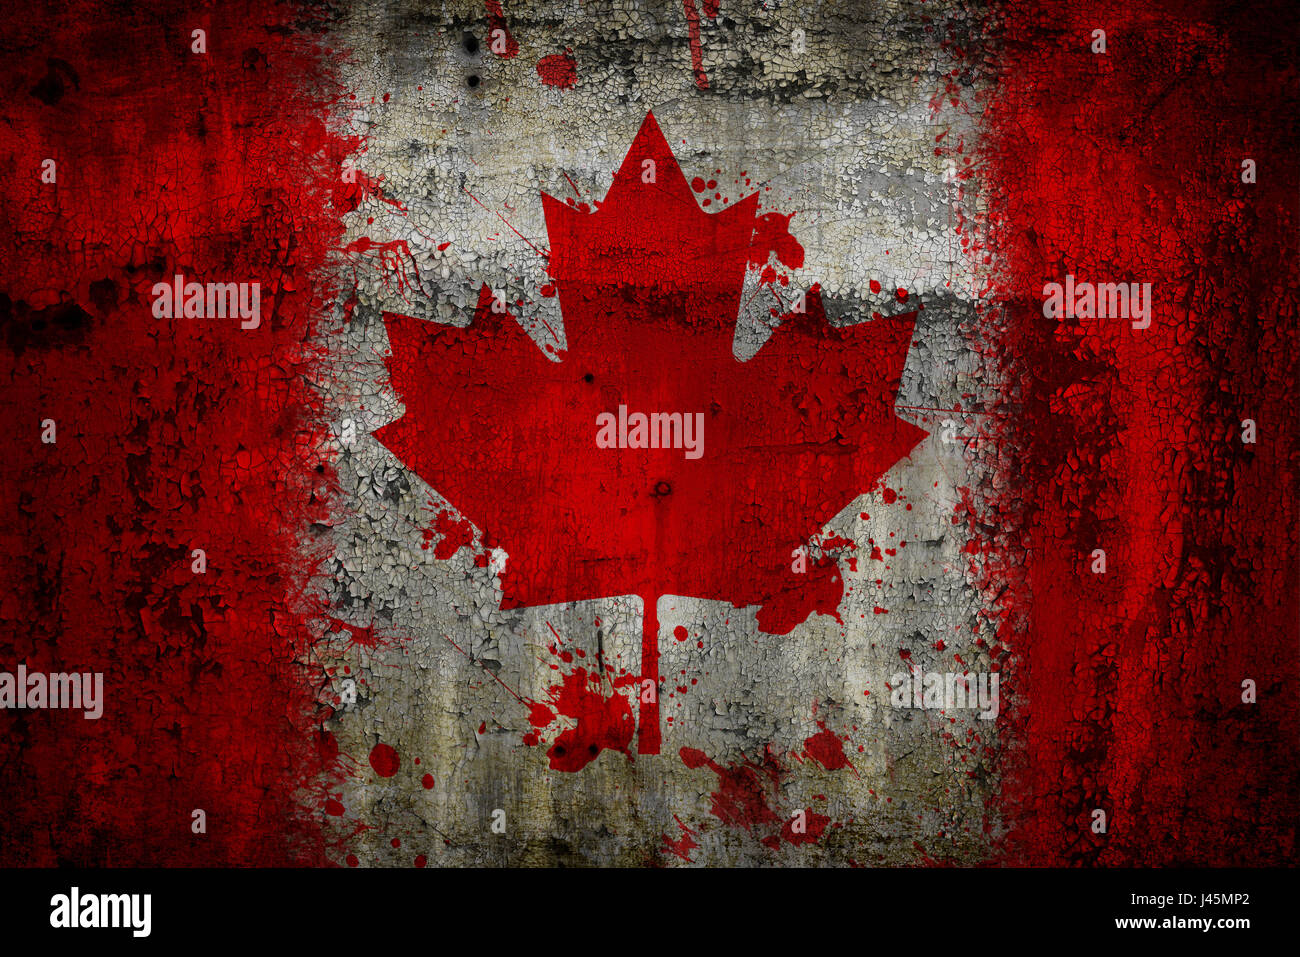 Kanada Flagge Auf Alten Rostigen Metall Hintergrund Gemalt Stockfotografie Alamy